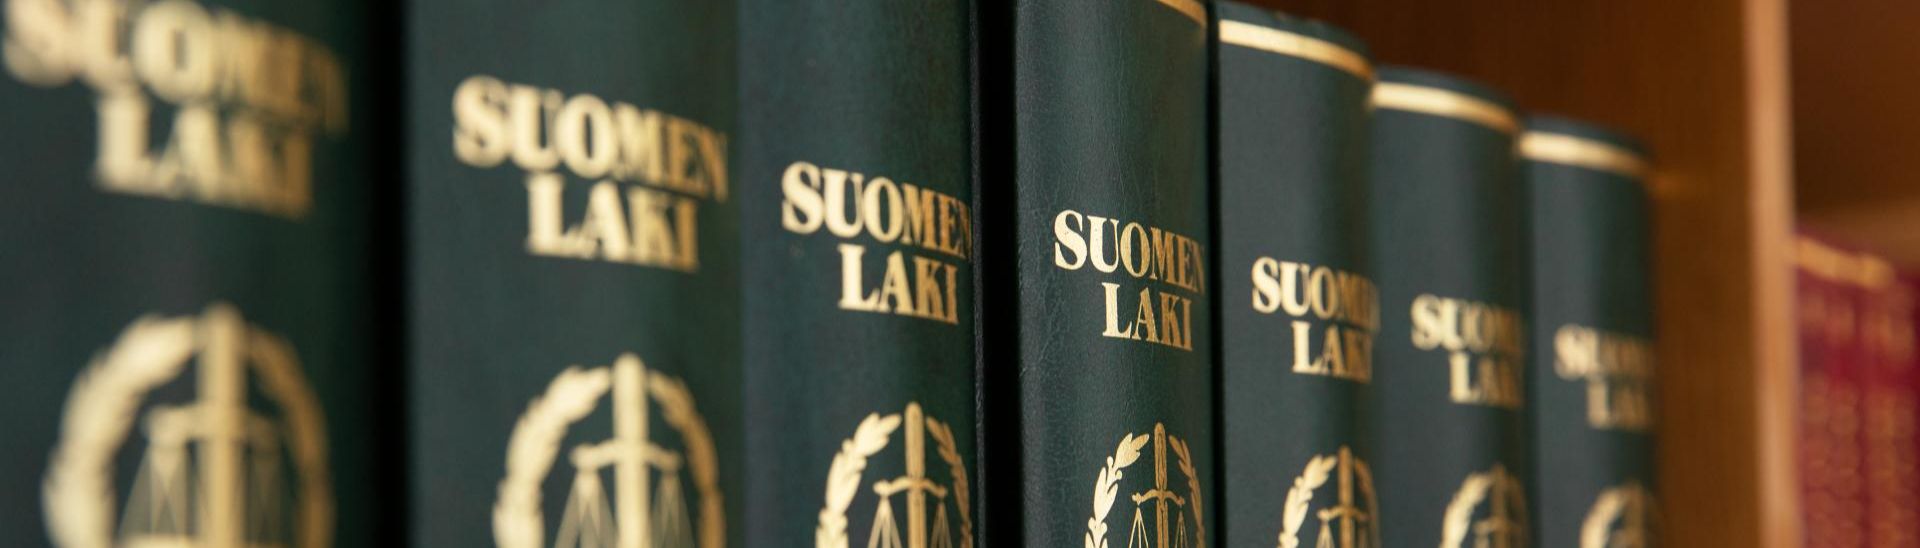 Suo­men laki -kir­joja kirjahyllyssä